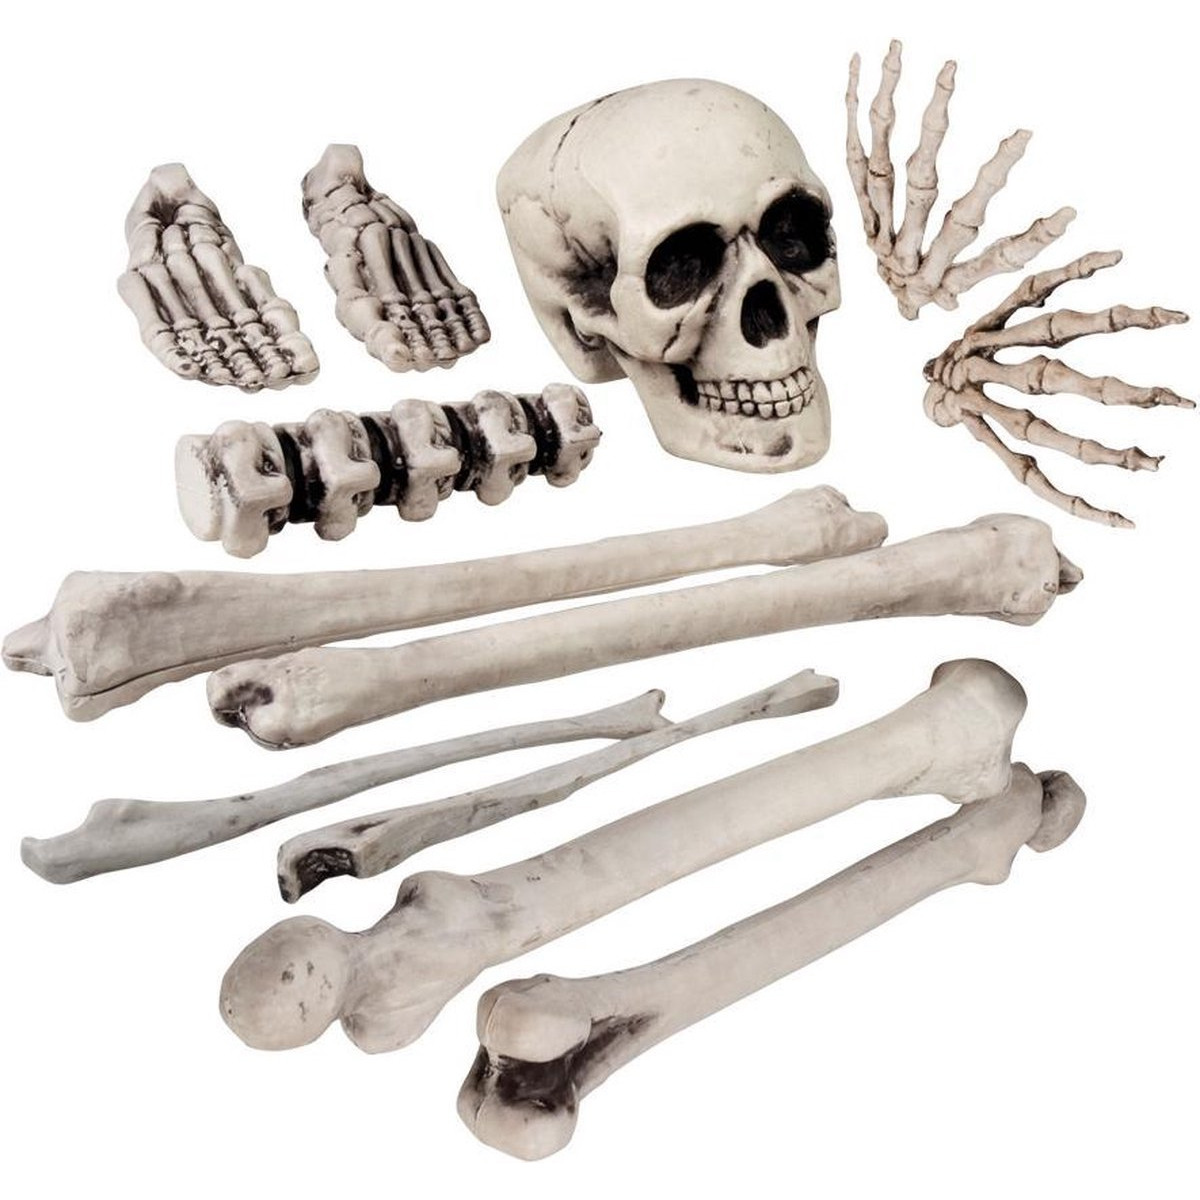 Zak met 12x decoratie horror kerkhof botten-beenderen